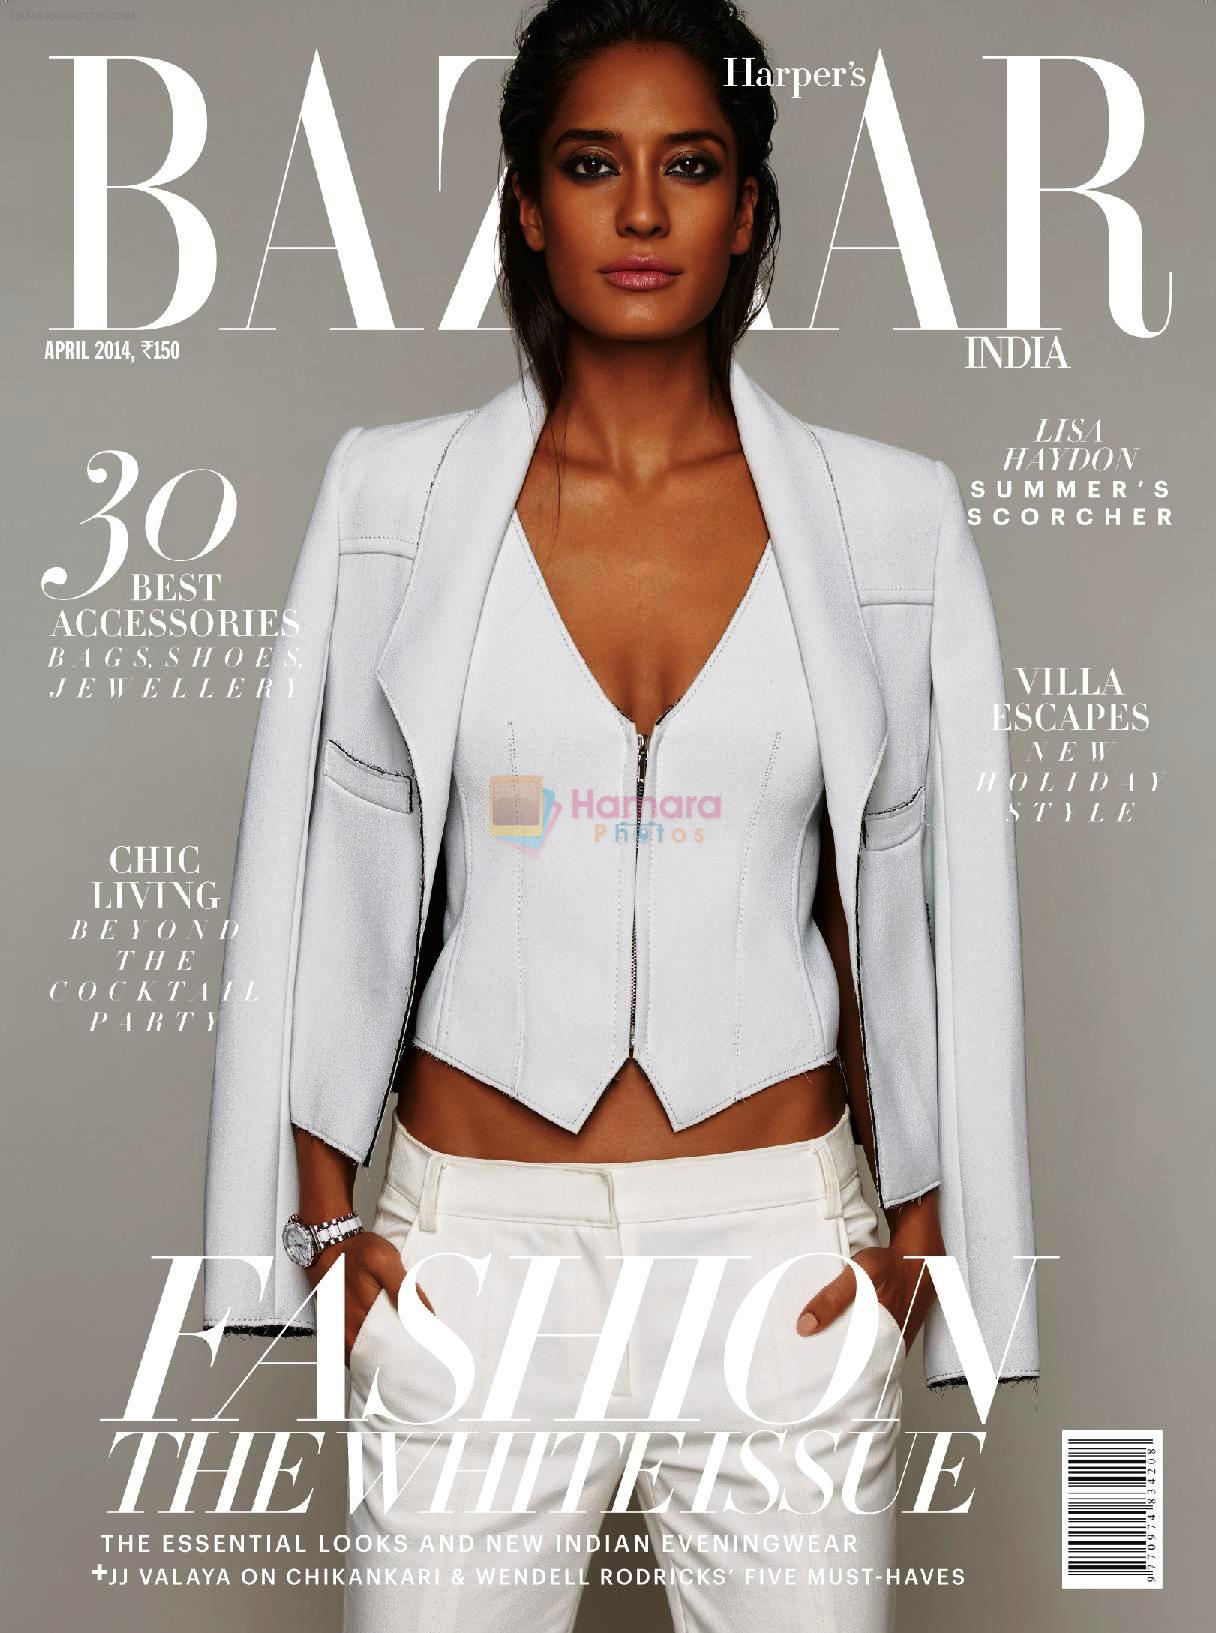 Lisa Haydon on the cover of Harper's Bazaar - April 2014 issue